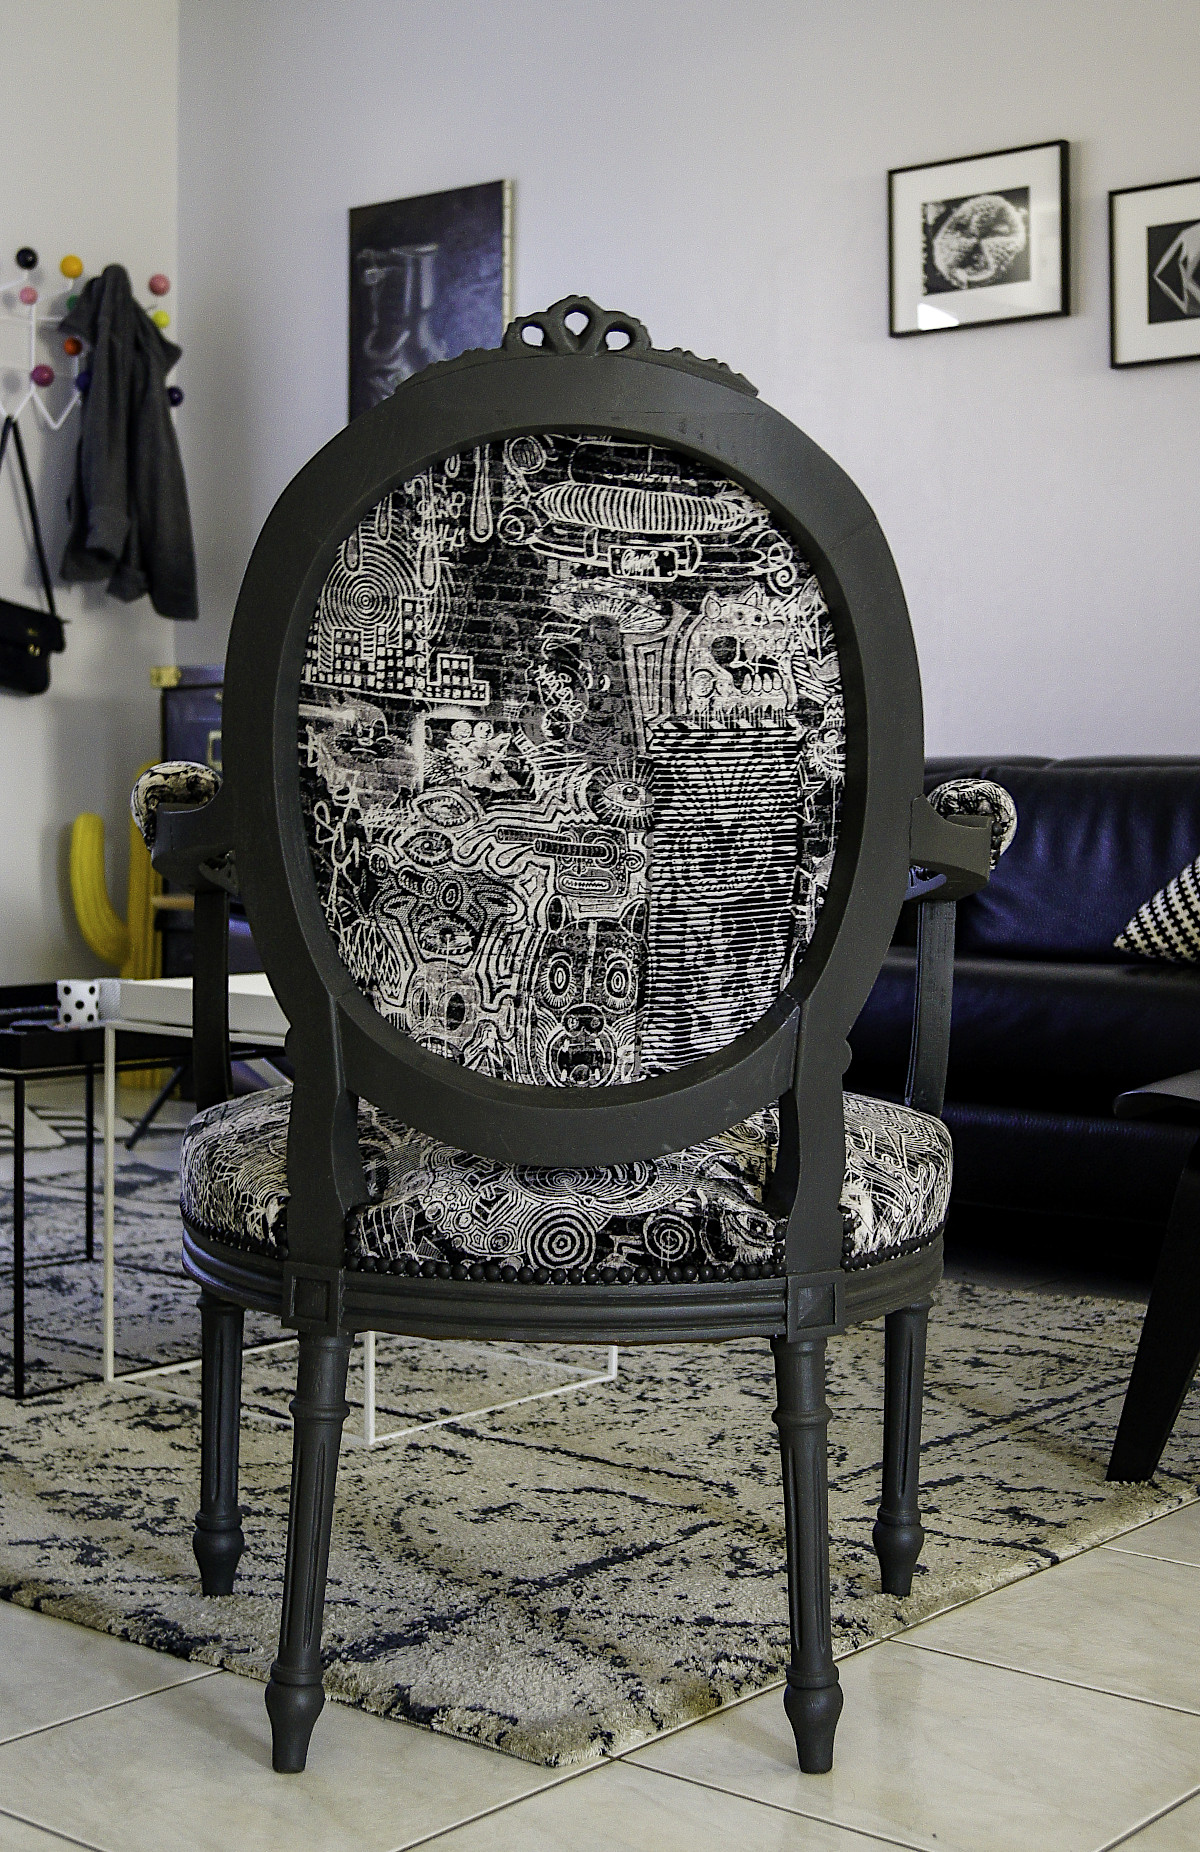 Décapage et relooking de fauteuils Louis XVI, finition couleur réglisse. Tissus noir et beige. Vue de dos.